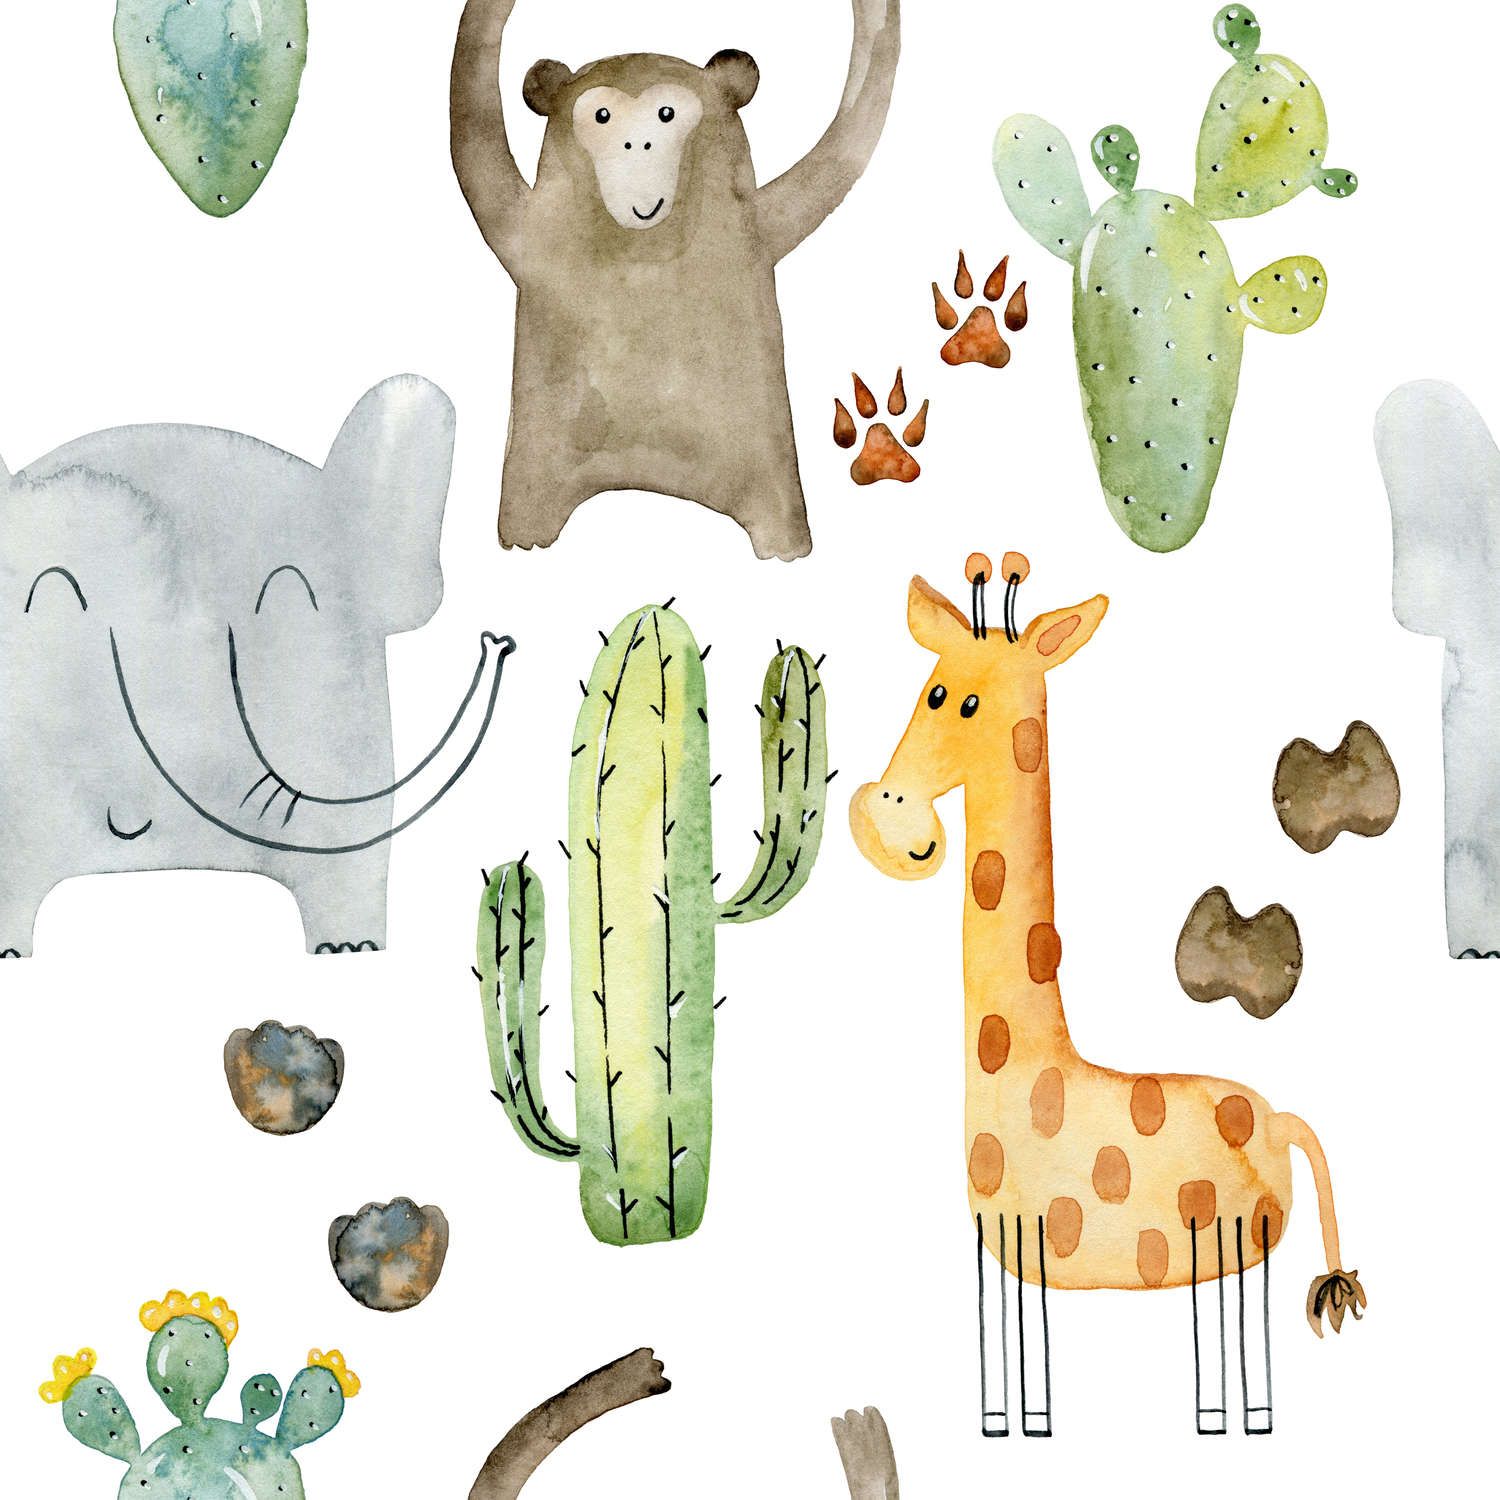             papiers peints à impression numérique avec animaux et cactus - intissé lisse & mat
        